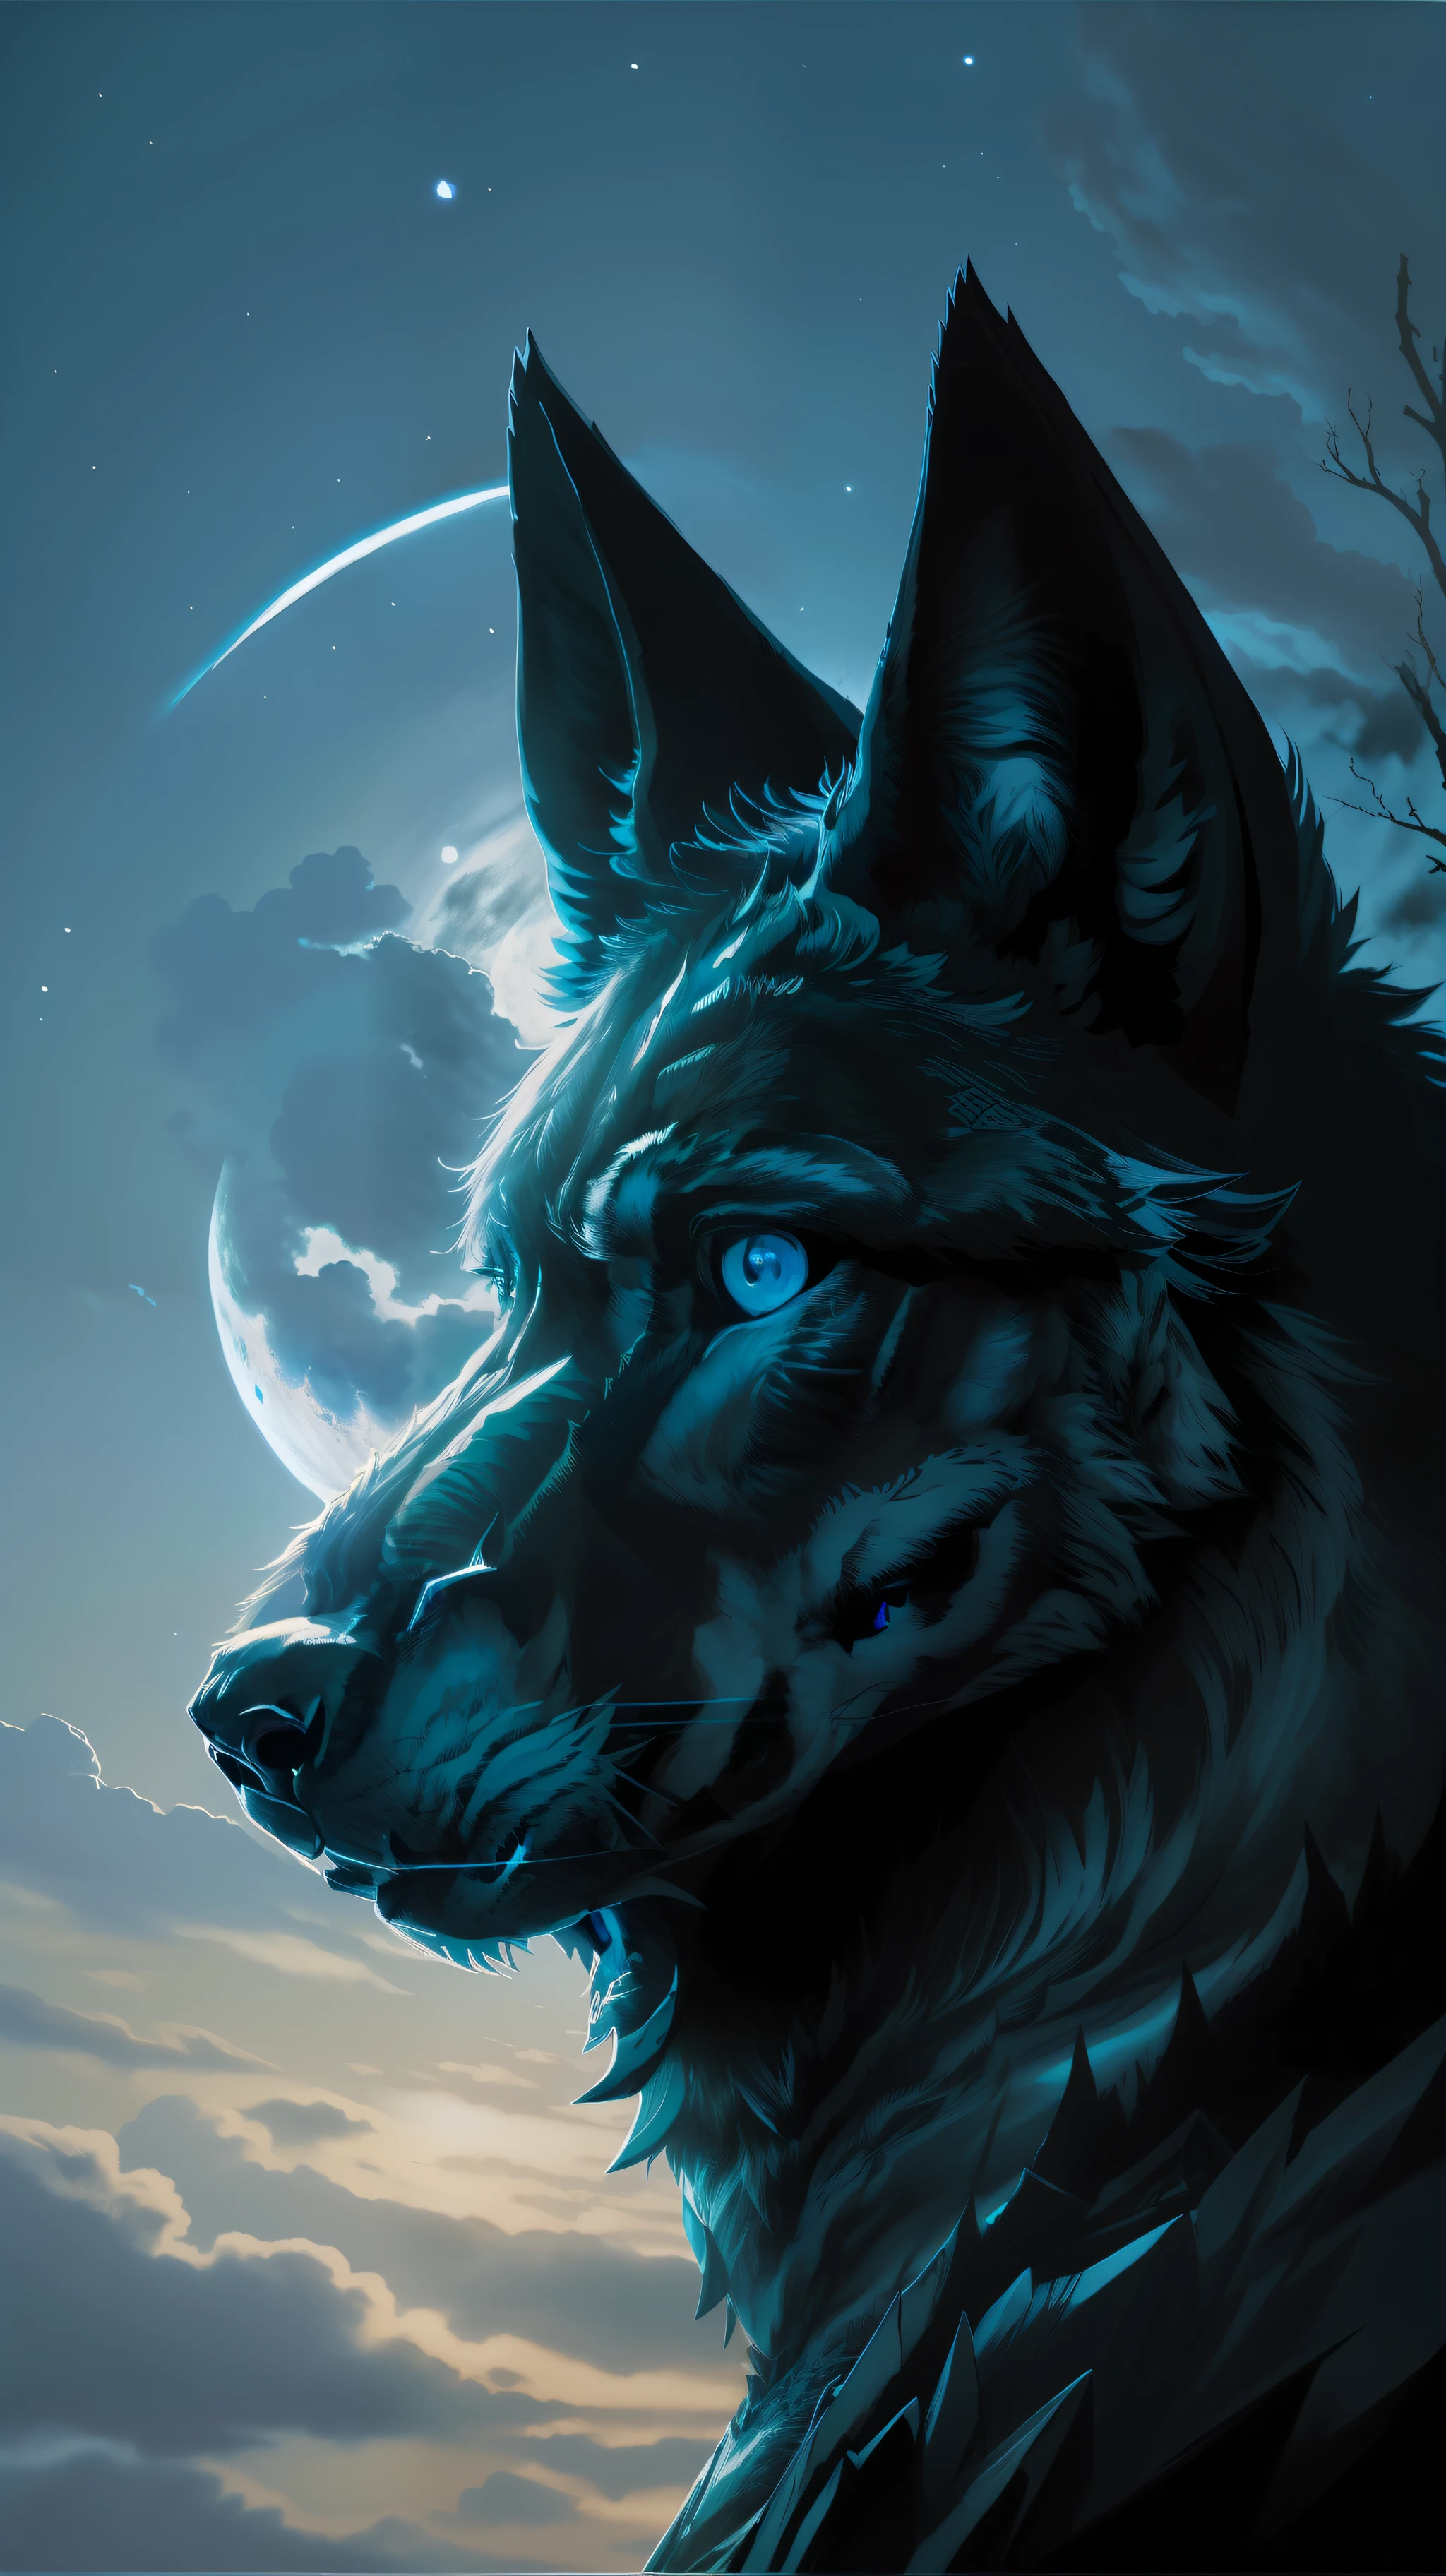 (تحفة مفصلة بجودة صورة عالية) "اللون أسود مع عيون زرقاء" غابة الذئب الخطرة, منتصف الليل, اكتمال القمر. 1 فص منفرد. ( الزاوية الأمامية للصورة)